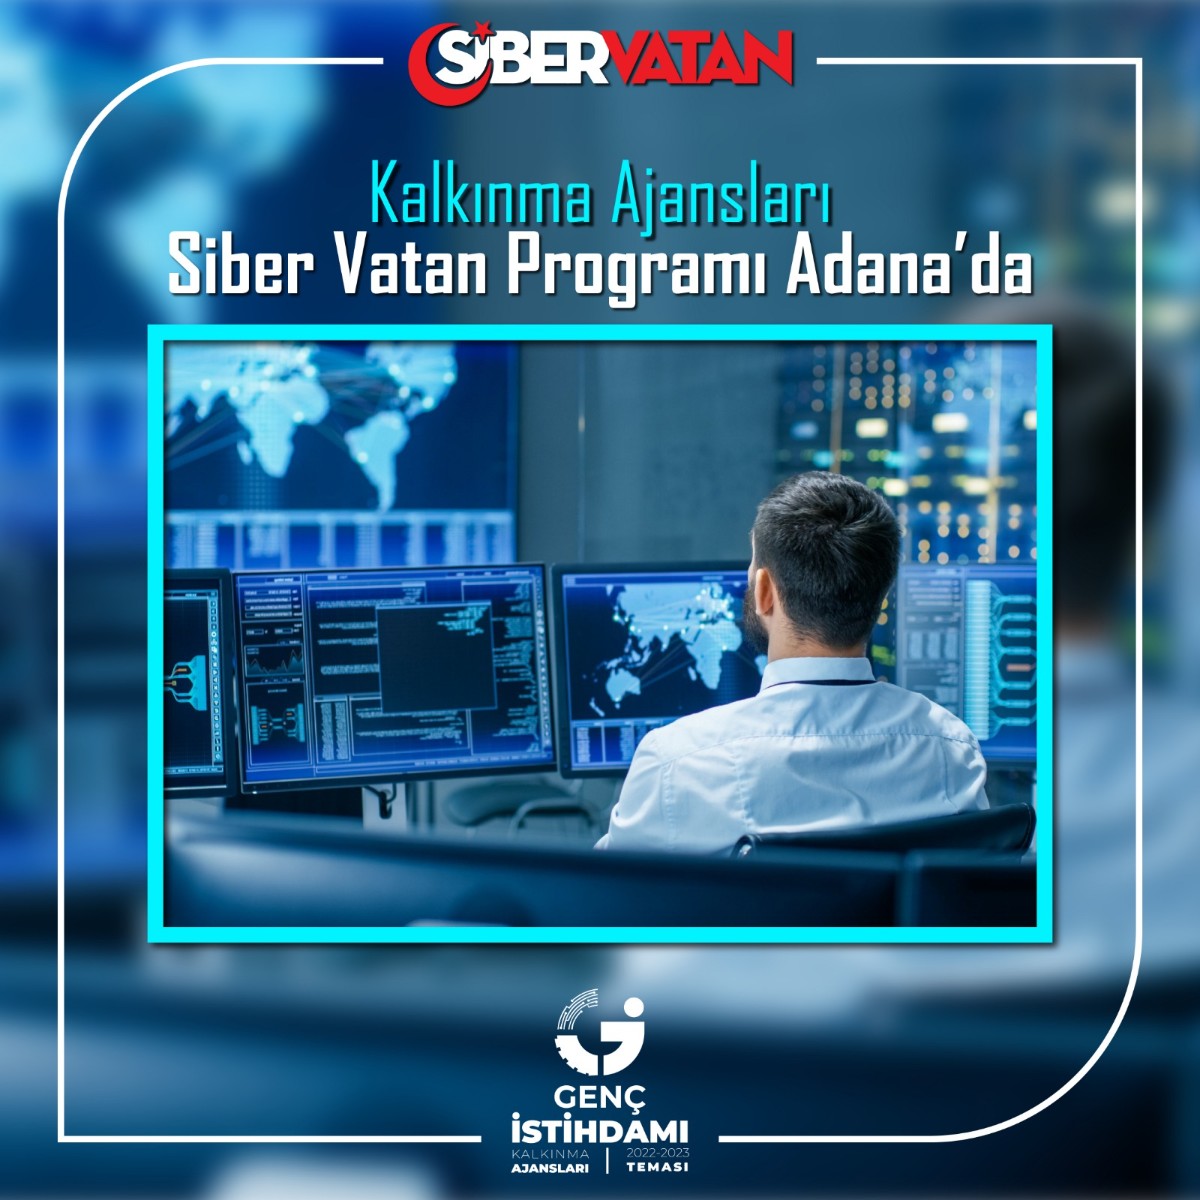 Kalkınma Ajansları Siber Vatan Programı Adana’da